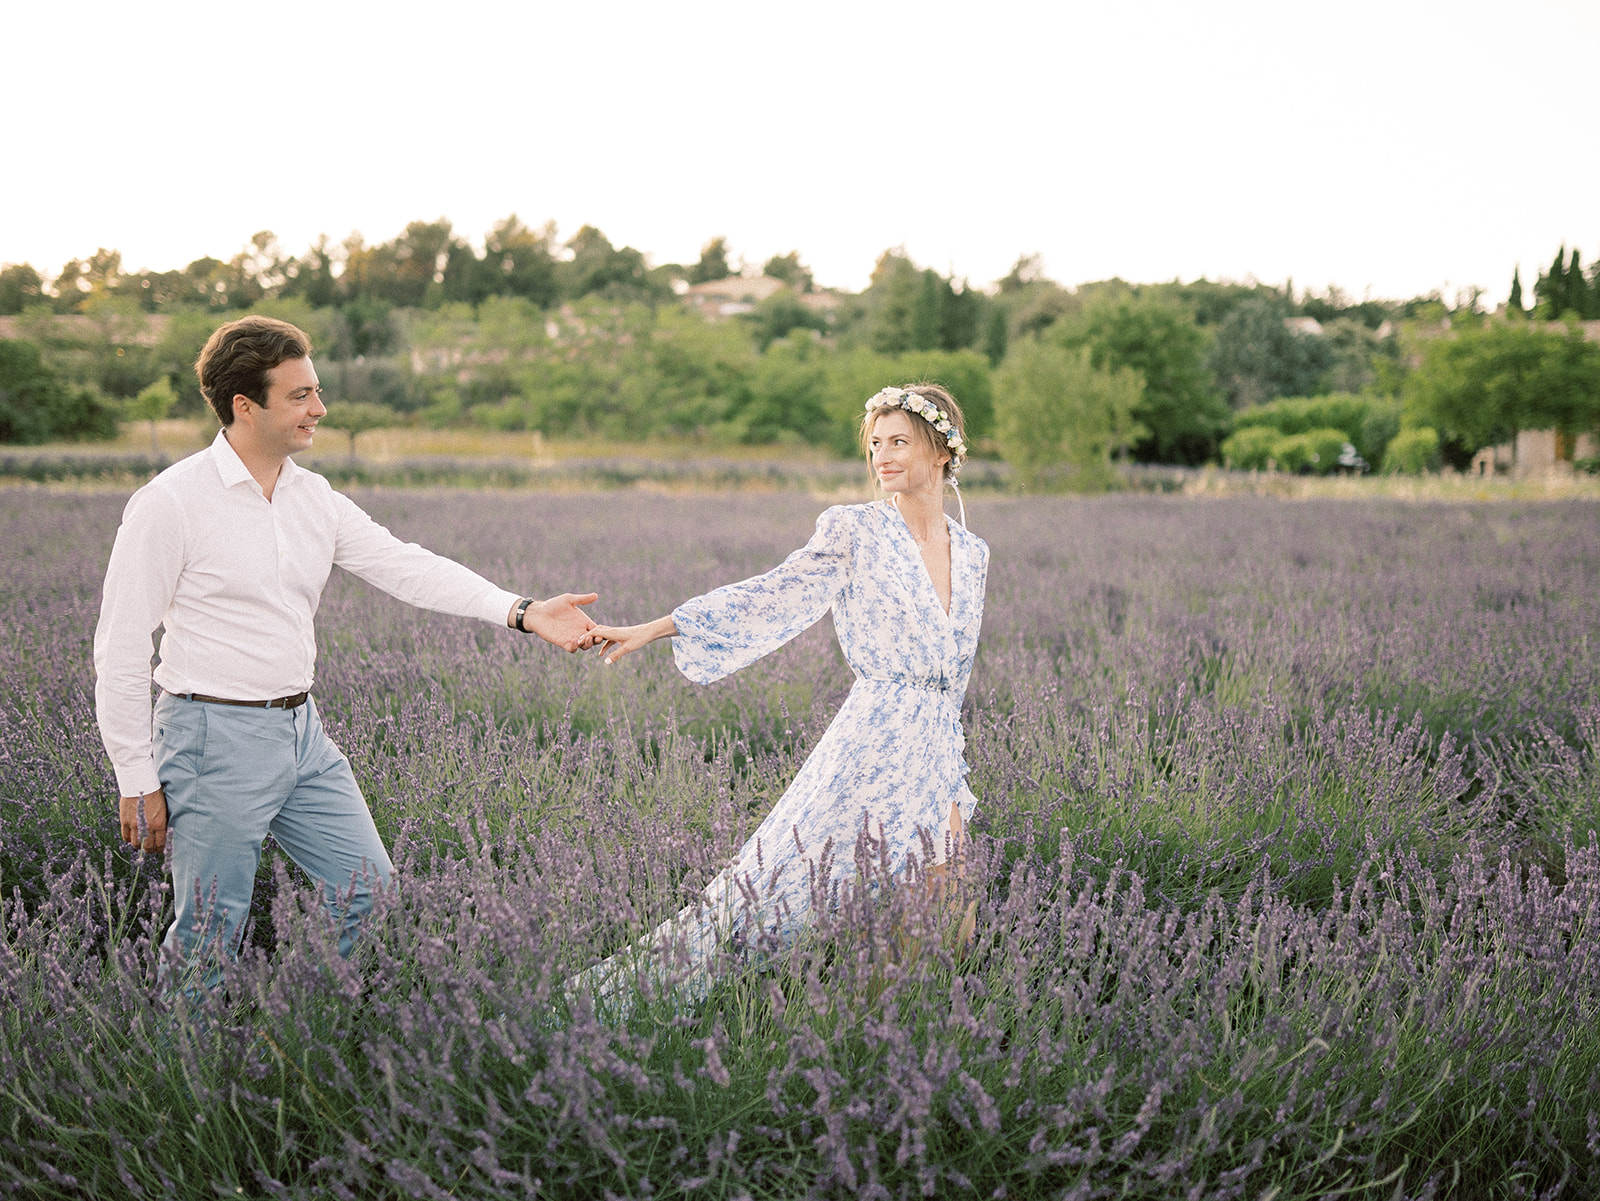 Fugue d'été en Provence - Dalida + Guillaume - Blog Mariage Madame C